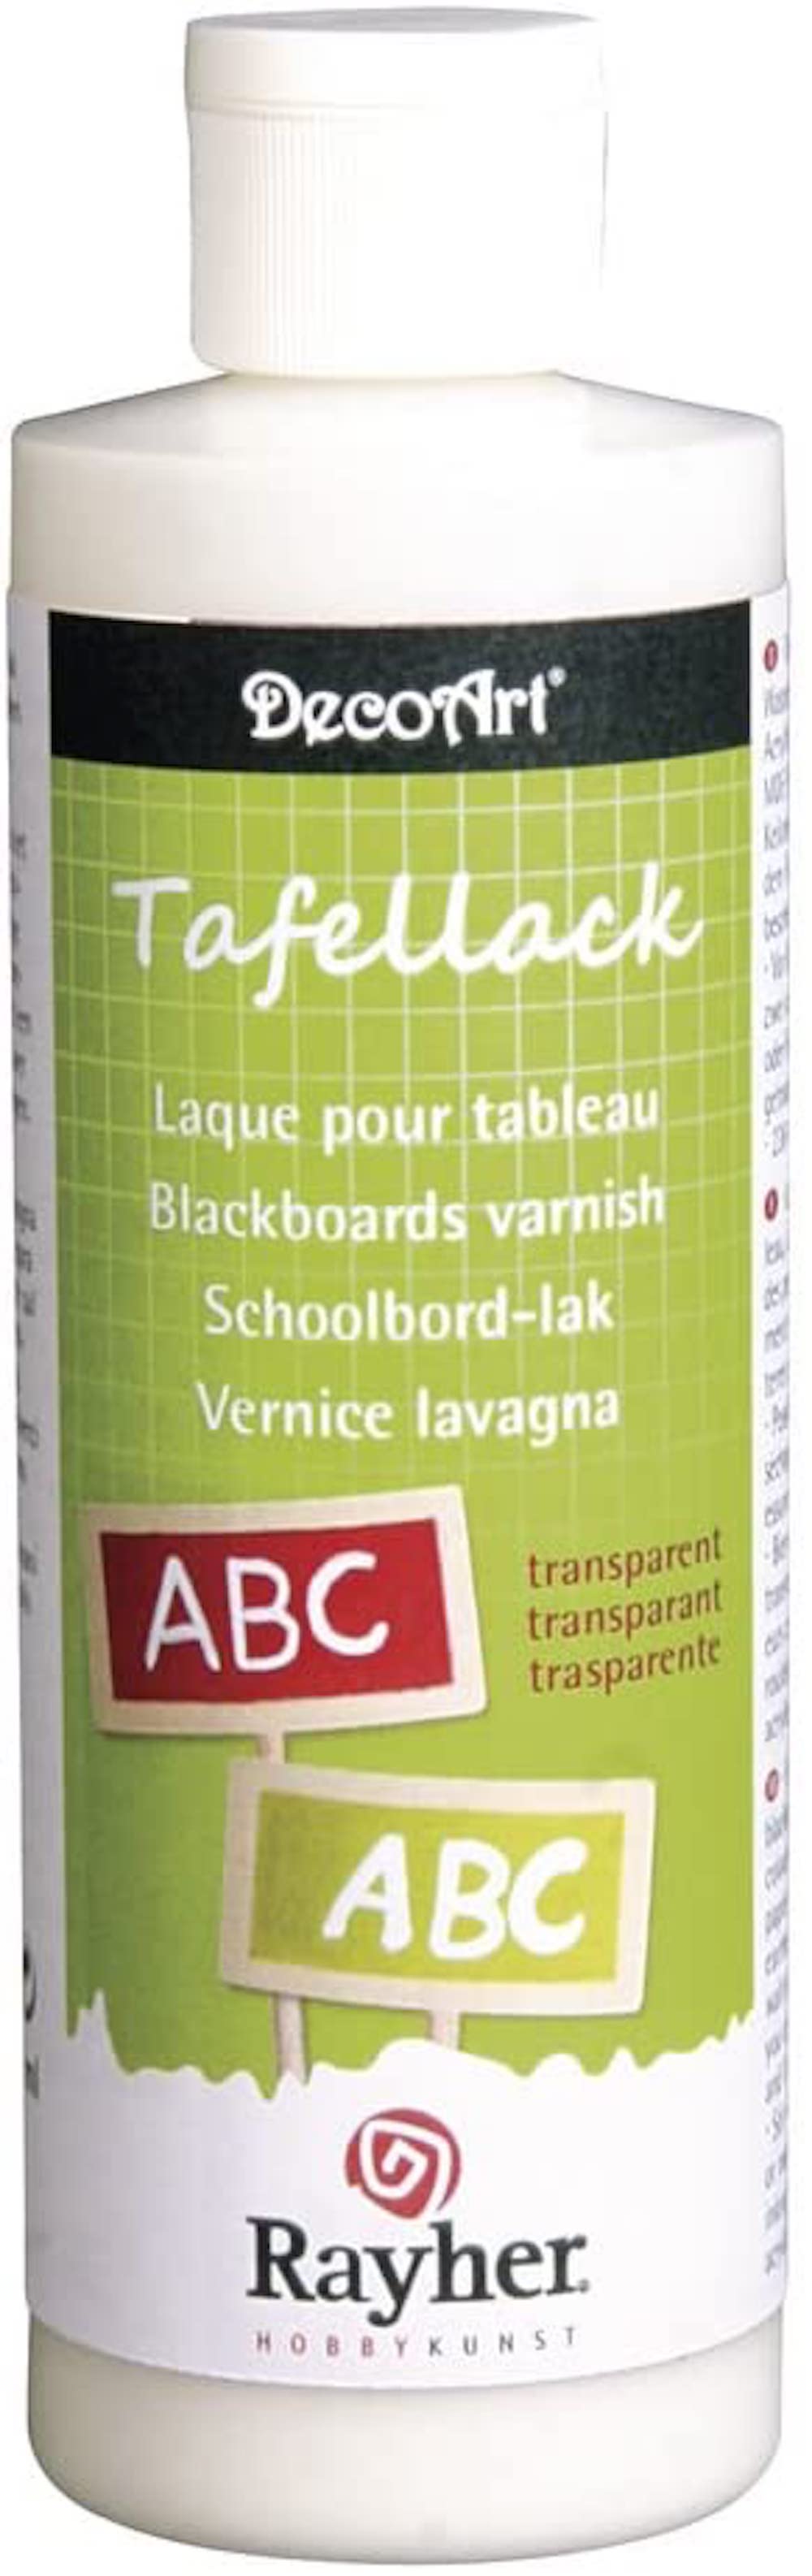 Tafellack transparent, seidenmatt, Flasche 236 ml